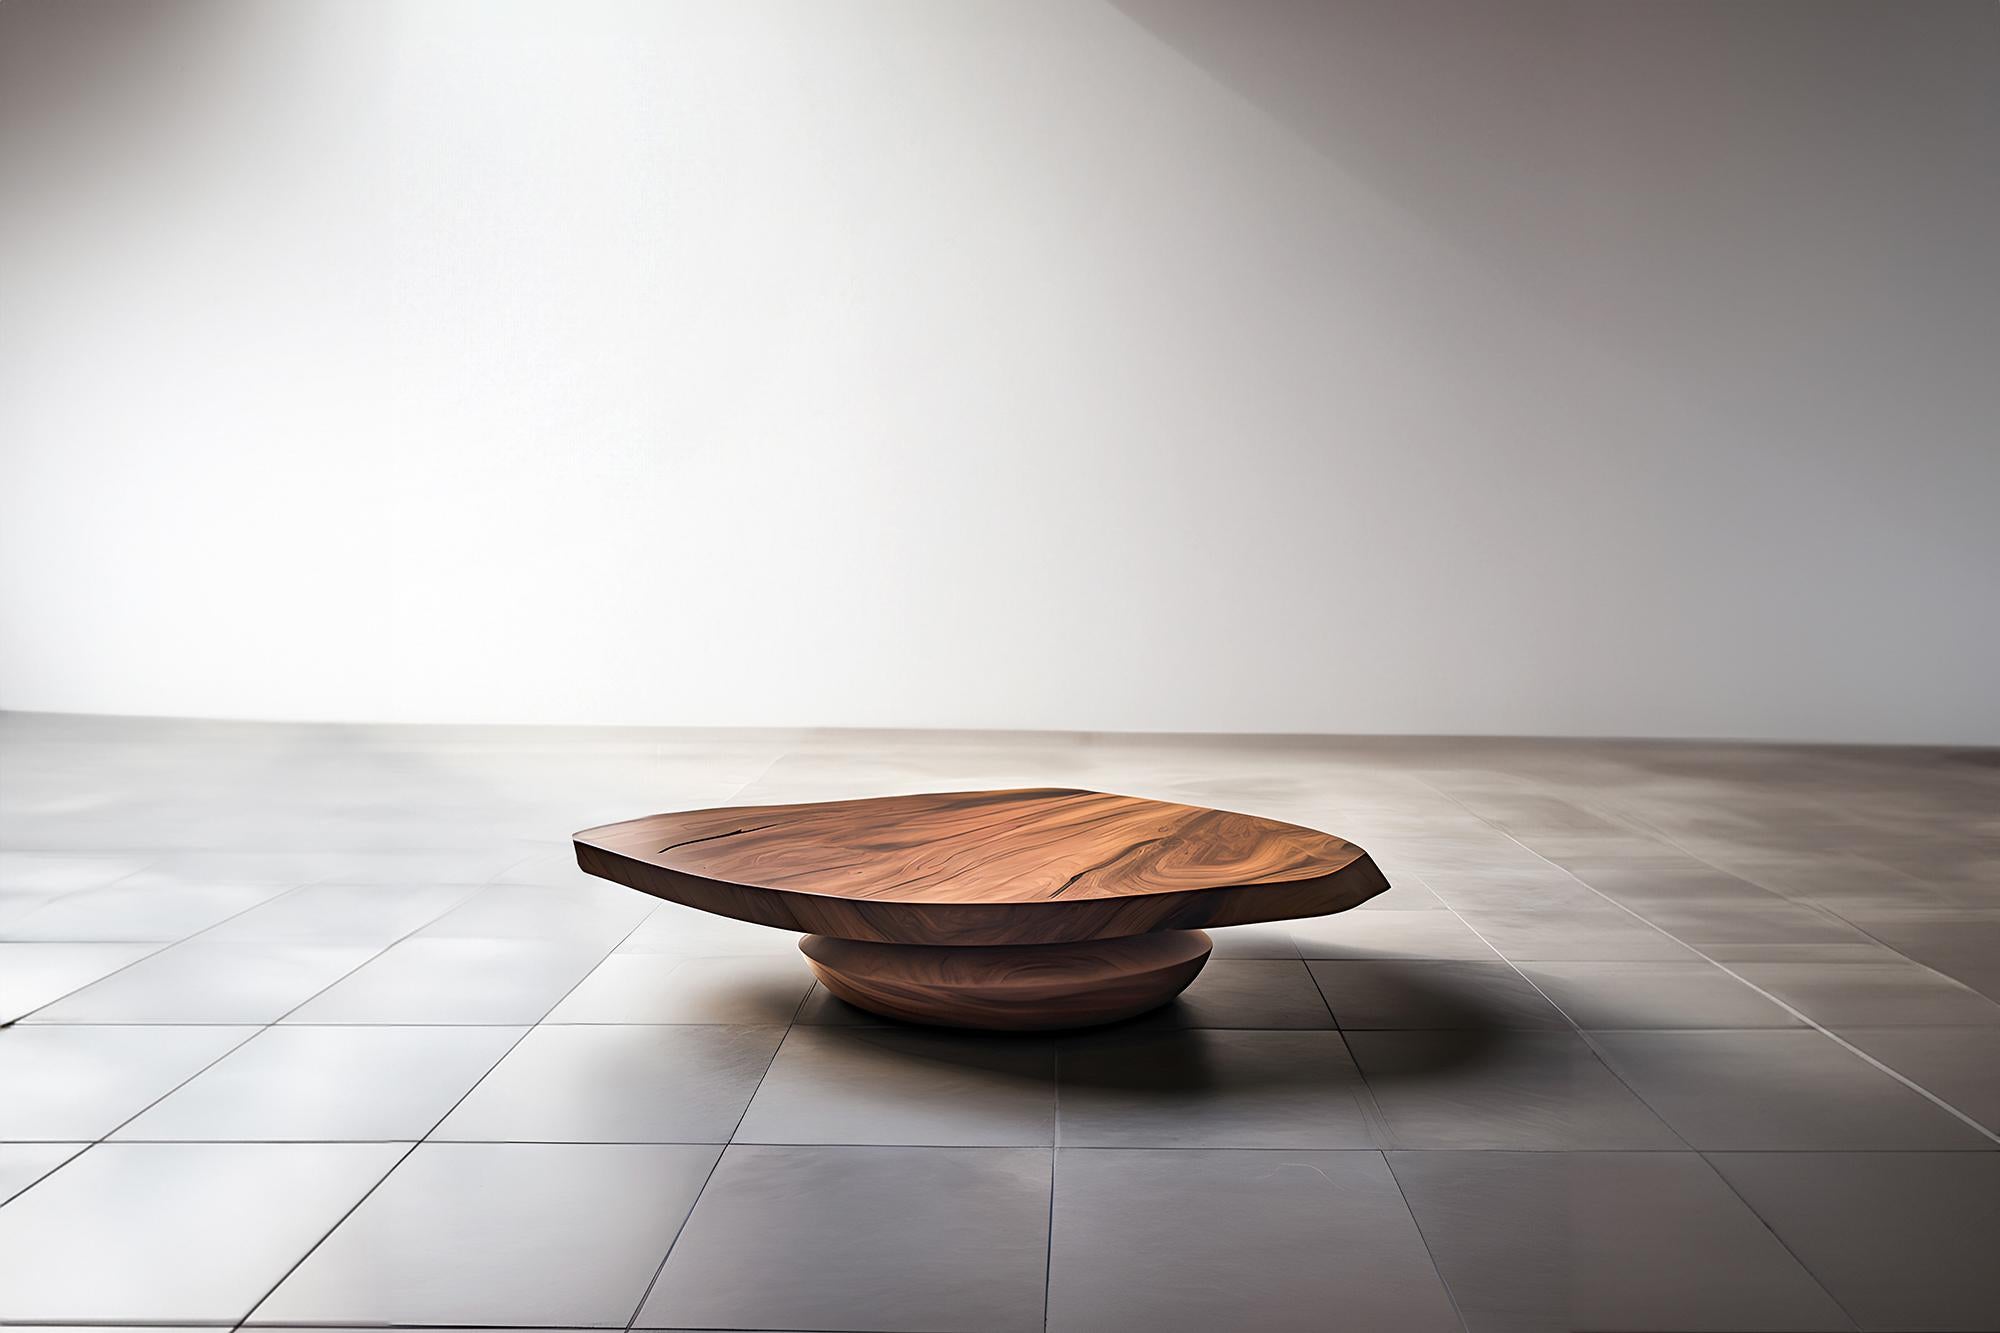 Skulpturaler Couchtisch aus Massivholz, Mitteltisch Solace S50   von Joel Escalona


Die Tischserie Solace, entworfen von Joel Escalona, ist eine Möbelkollektion, die dank ihrer sinnlichen, dichten und unregelmäßigen Formen Ausgewogenheit und